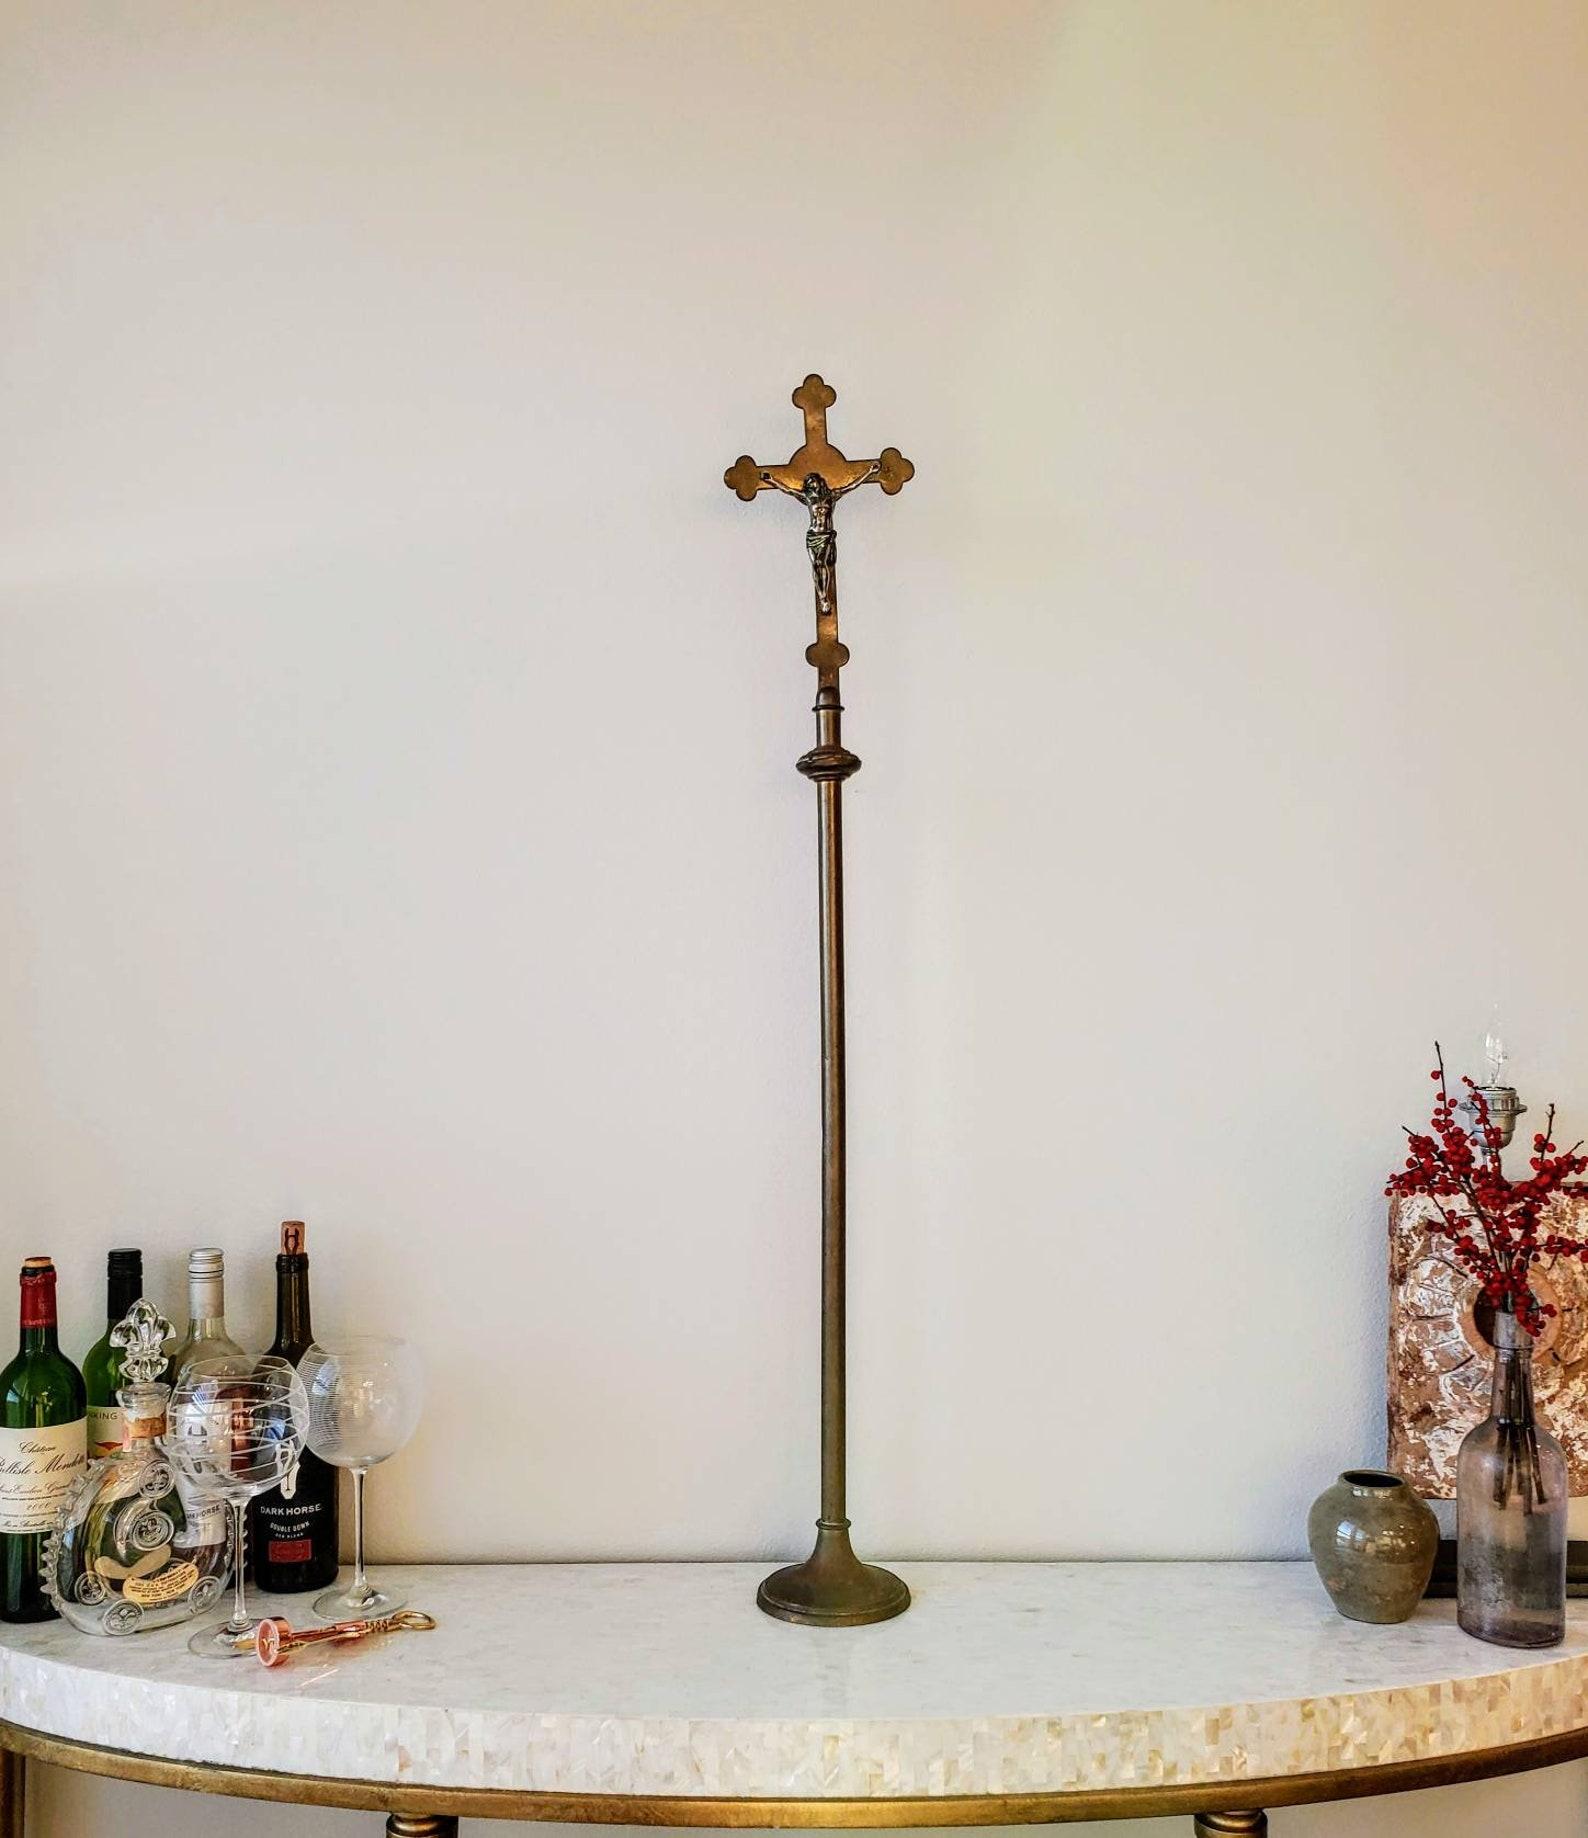 Ein authentisches antikes Prozessionskreuz aus Messing - Altarkreuz mit schöner, elegant gealterter Patina. Aus dem späten 18. bis 19. Jahrhundert stammende, detailreich gearbeitete silberne Fronleichnamsfigur mit Resten von Vergoldung, auf einem